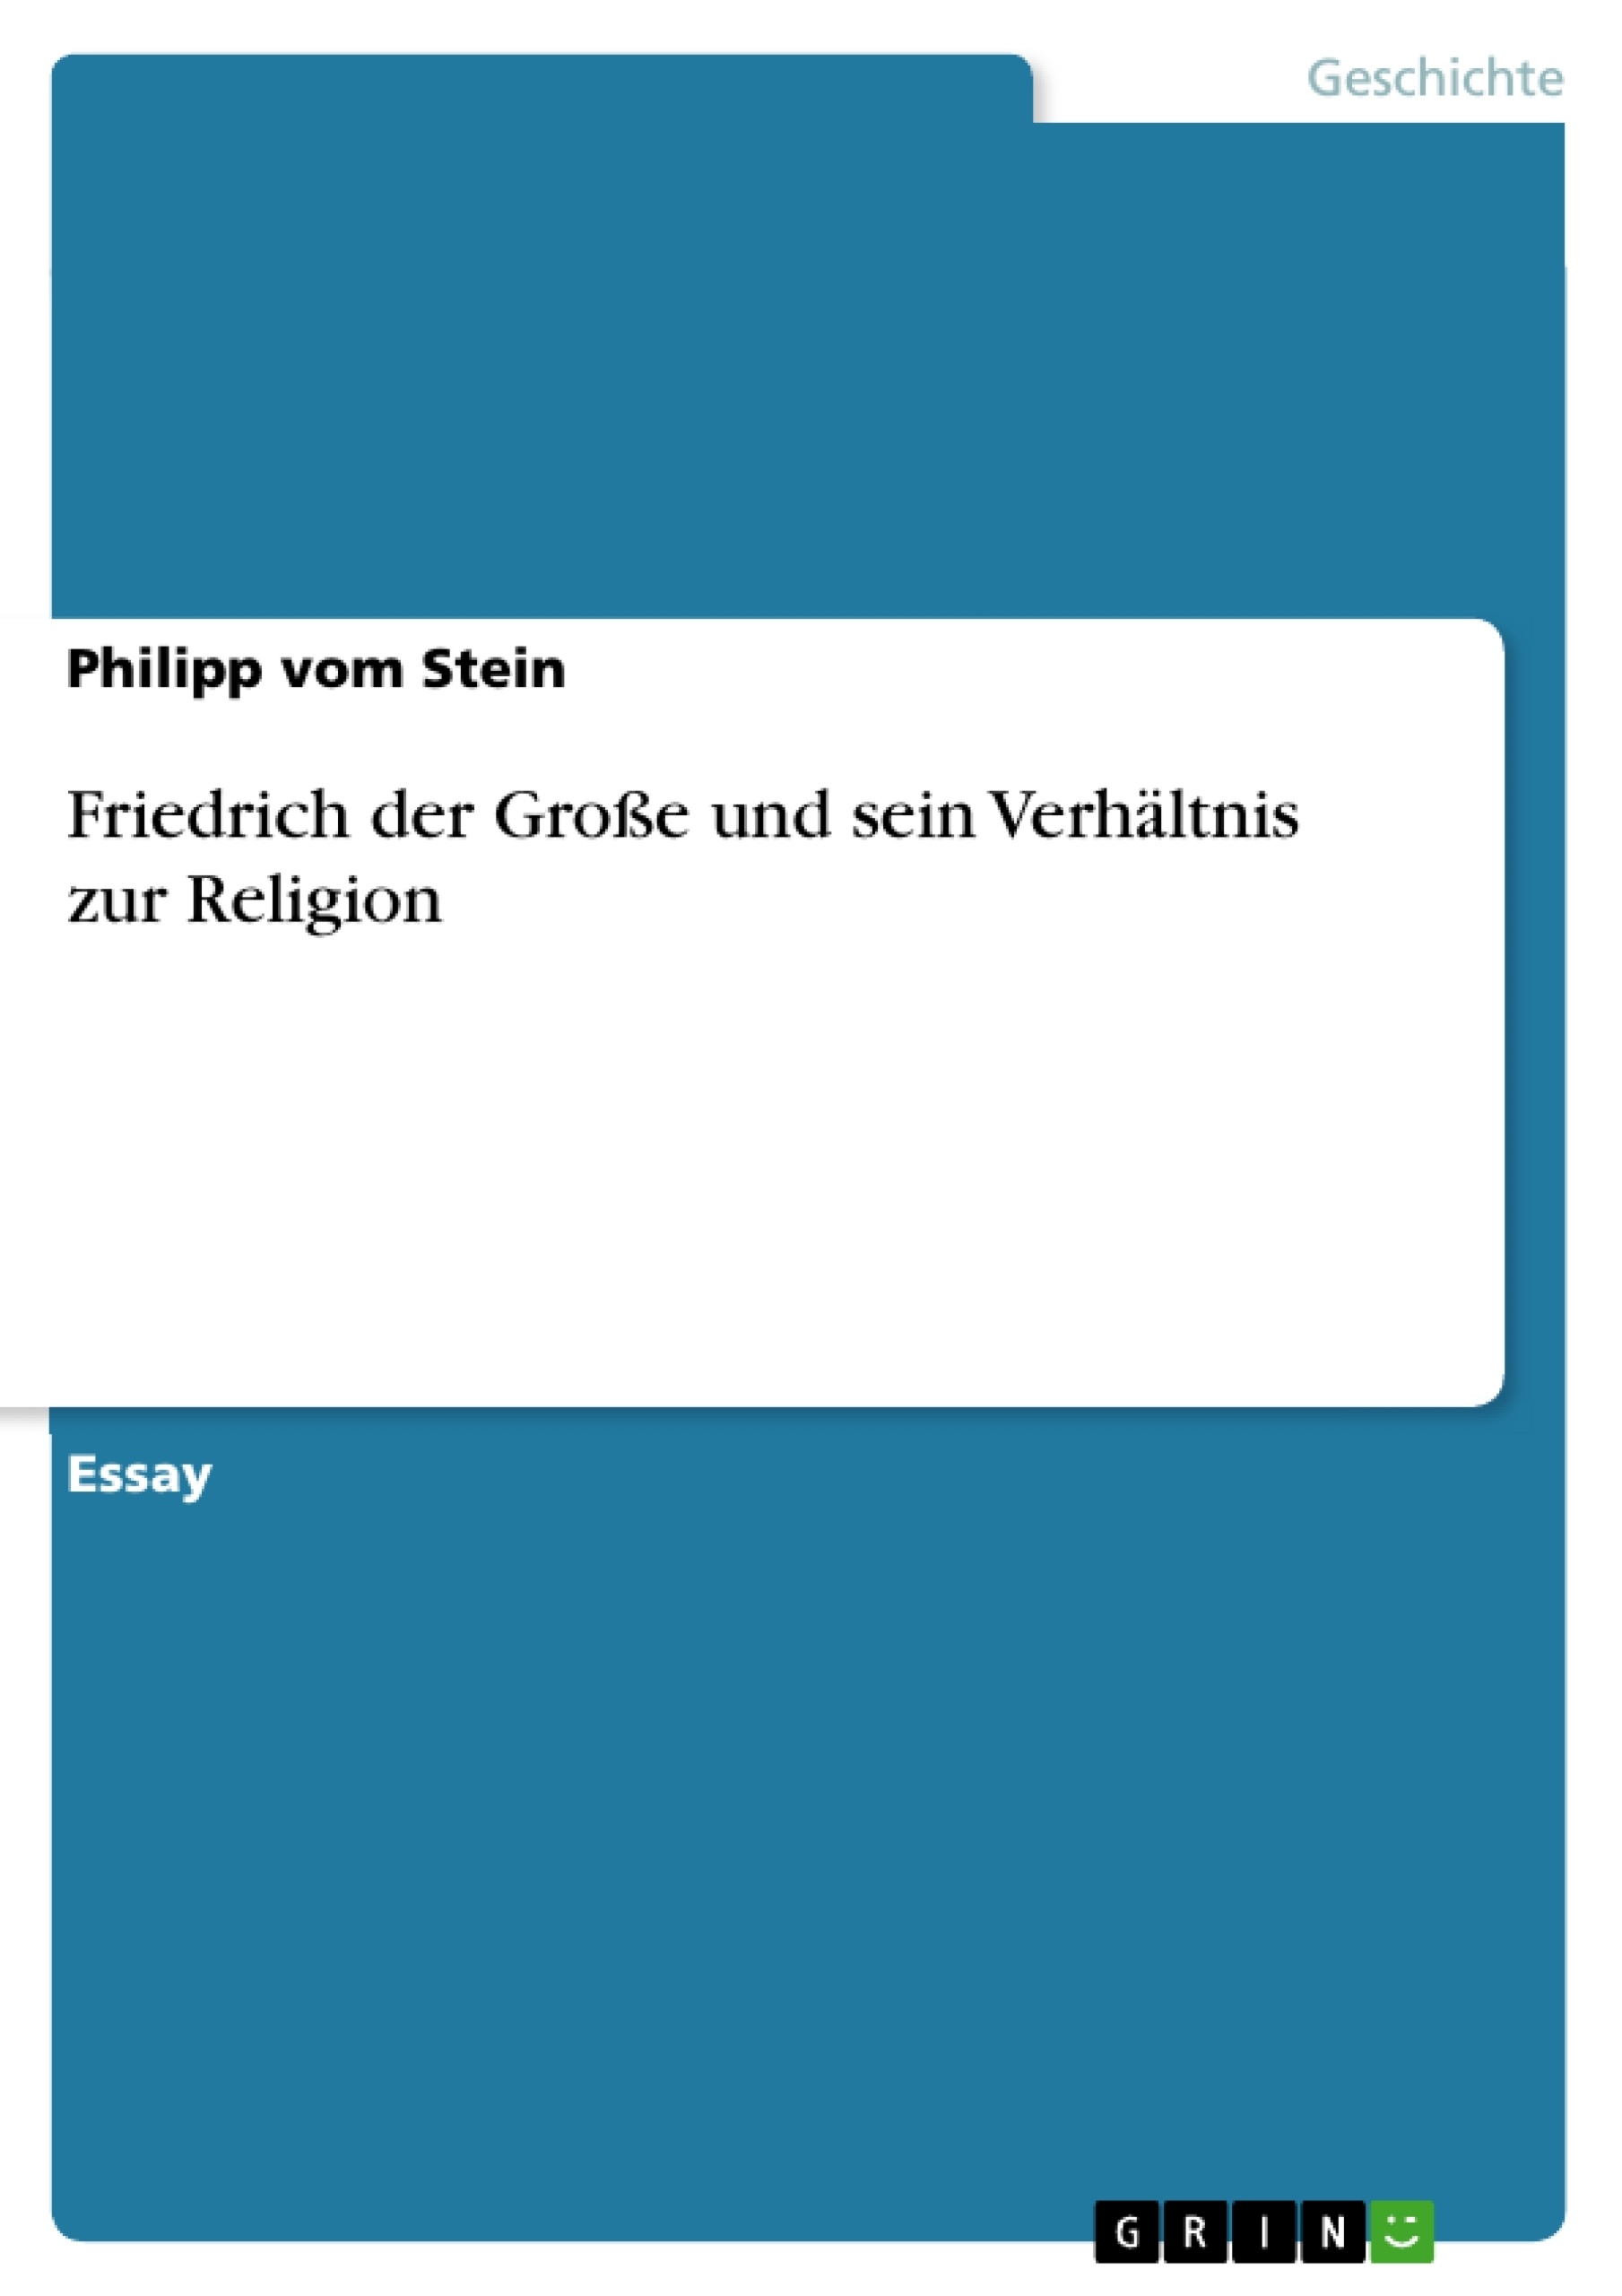 Título: Friedrich der Große und sein Verhältnis zur Religion